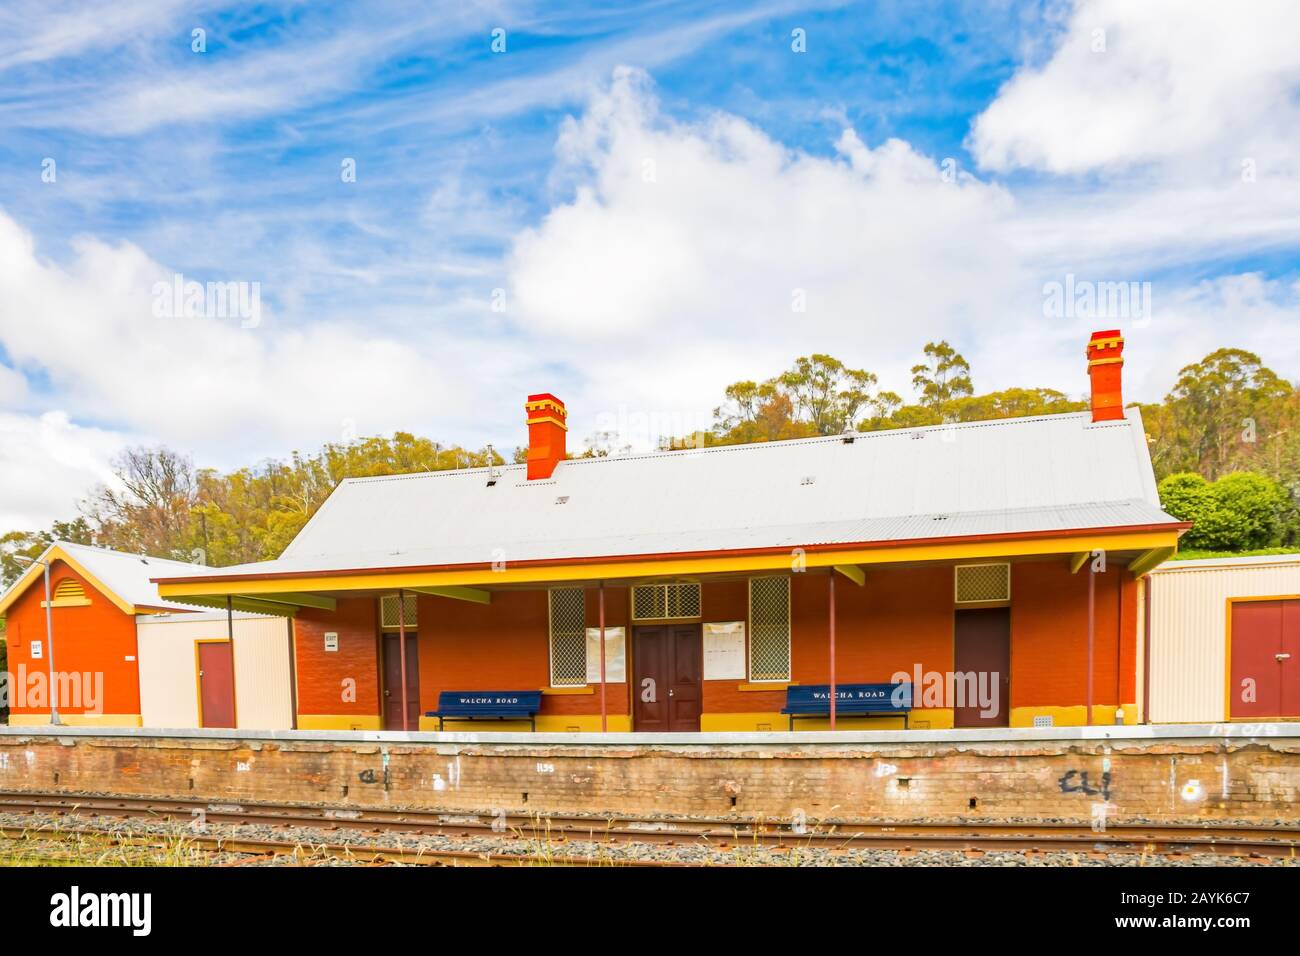 Walcha Road, Bahnhof, NSW Australien. Stockfoto